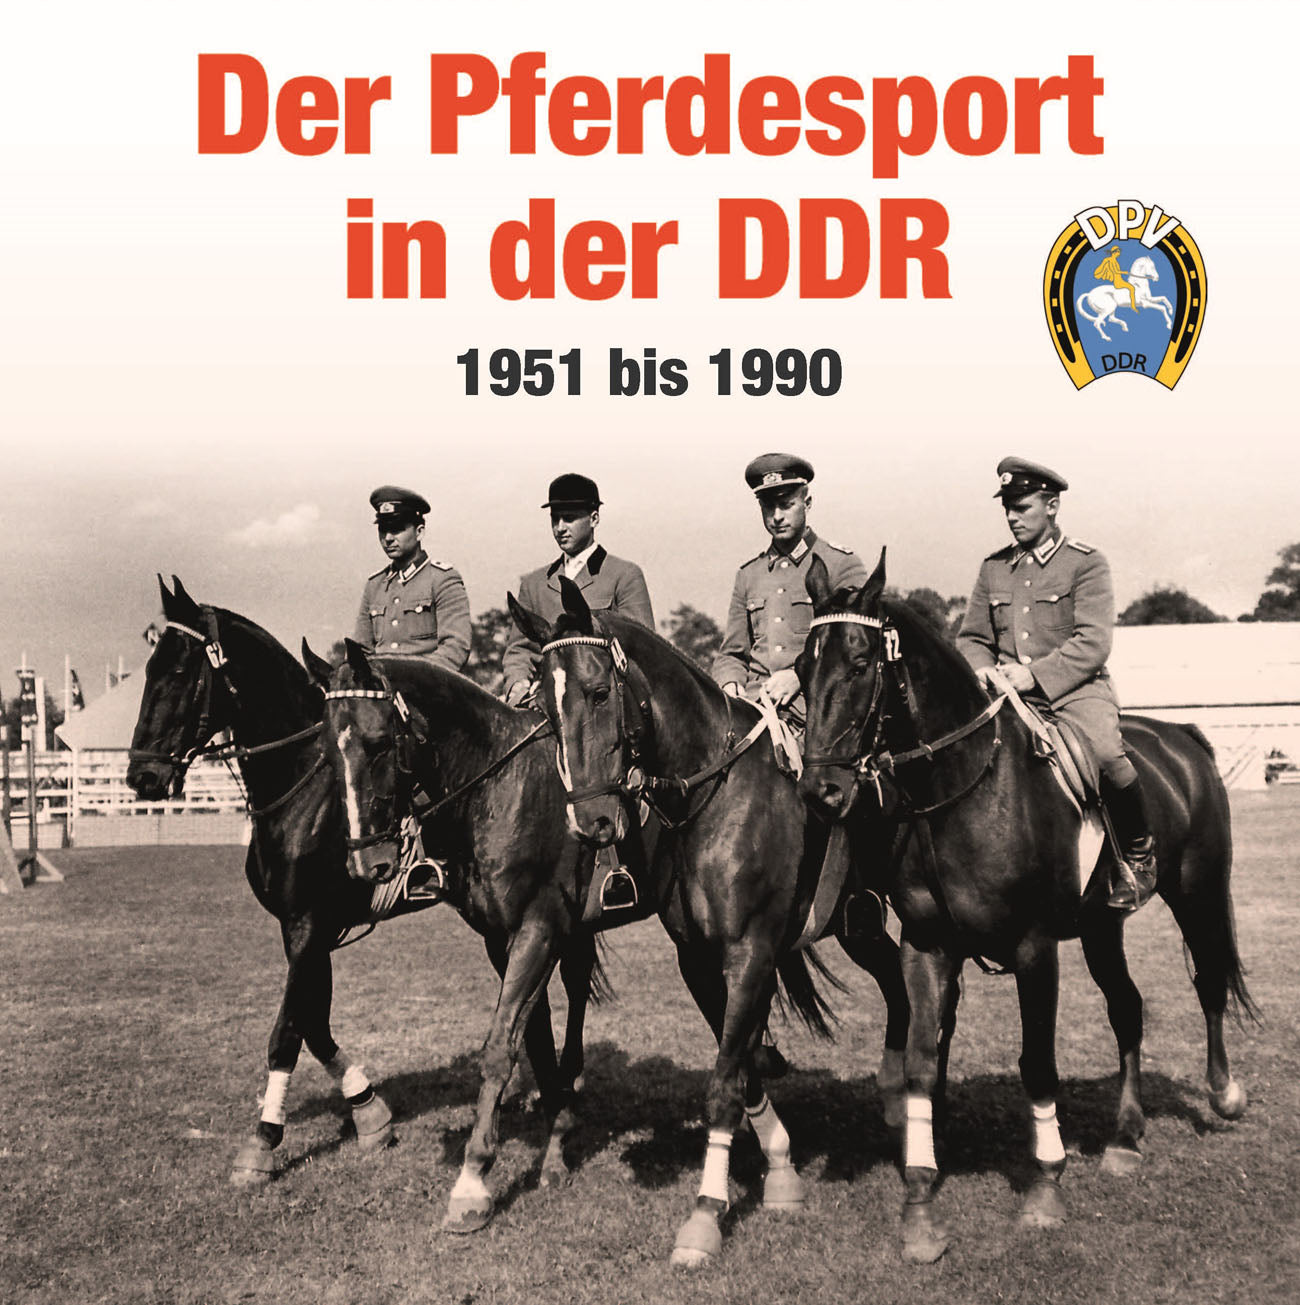 Der Pferdesport in der DDR